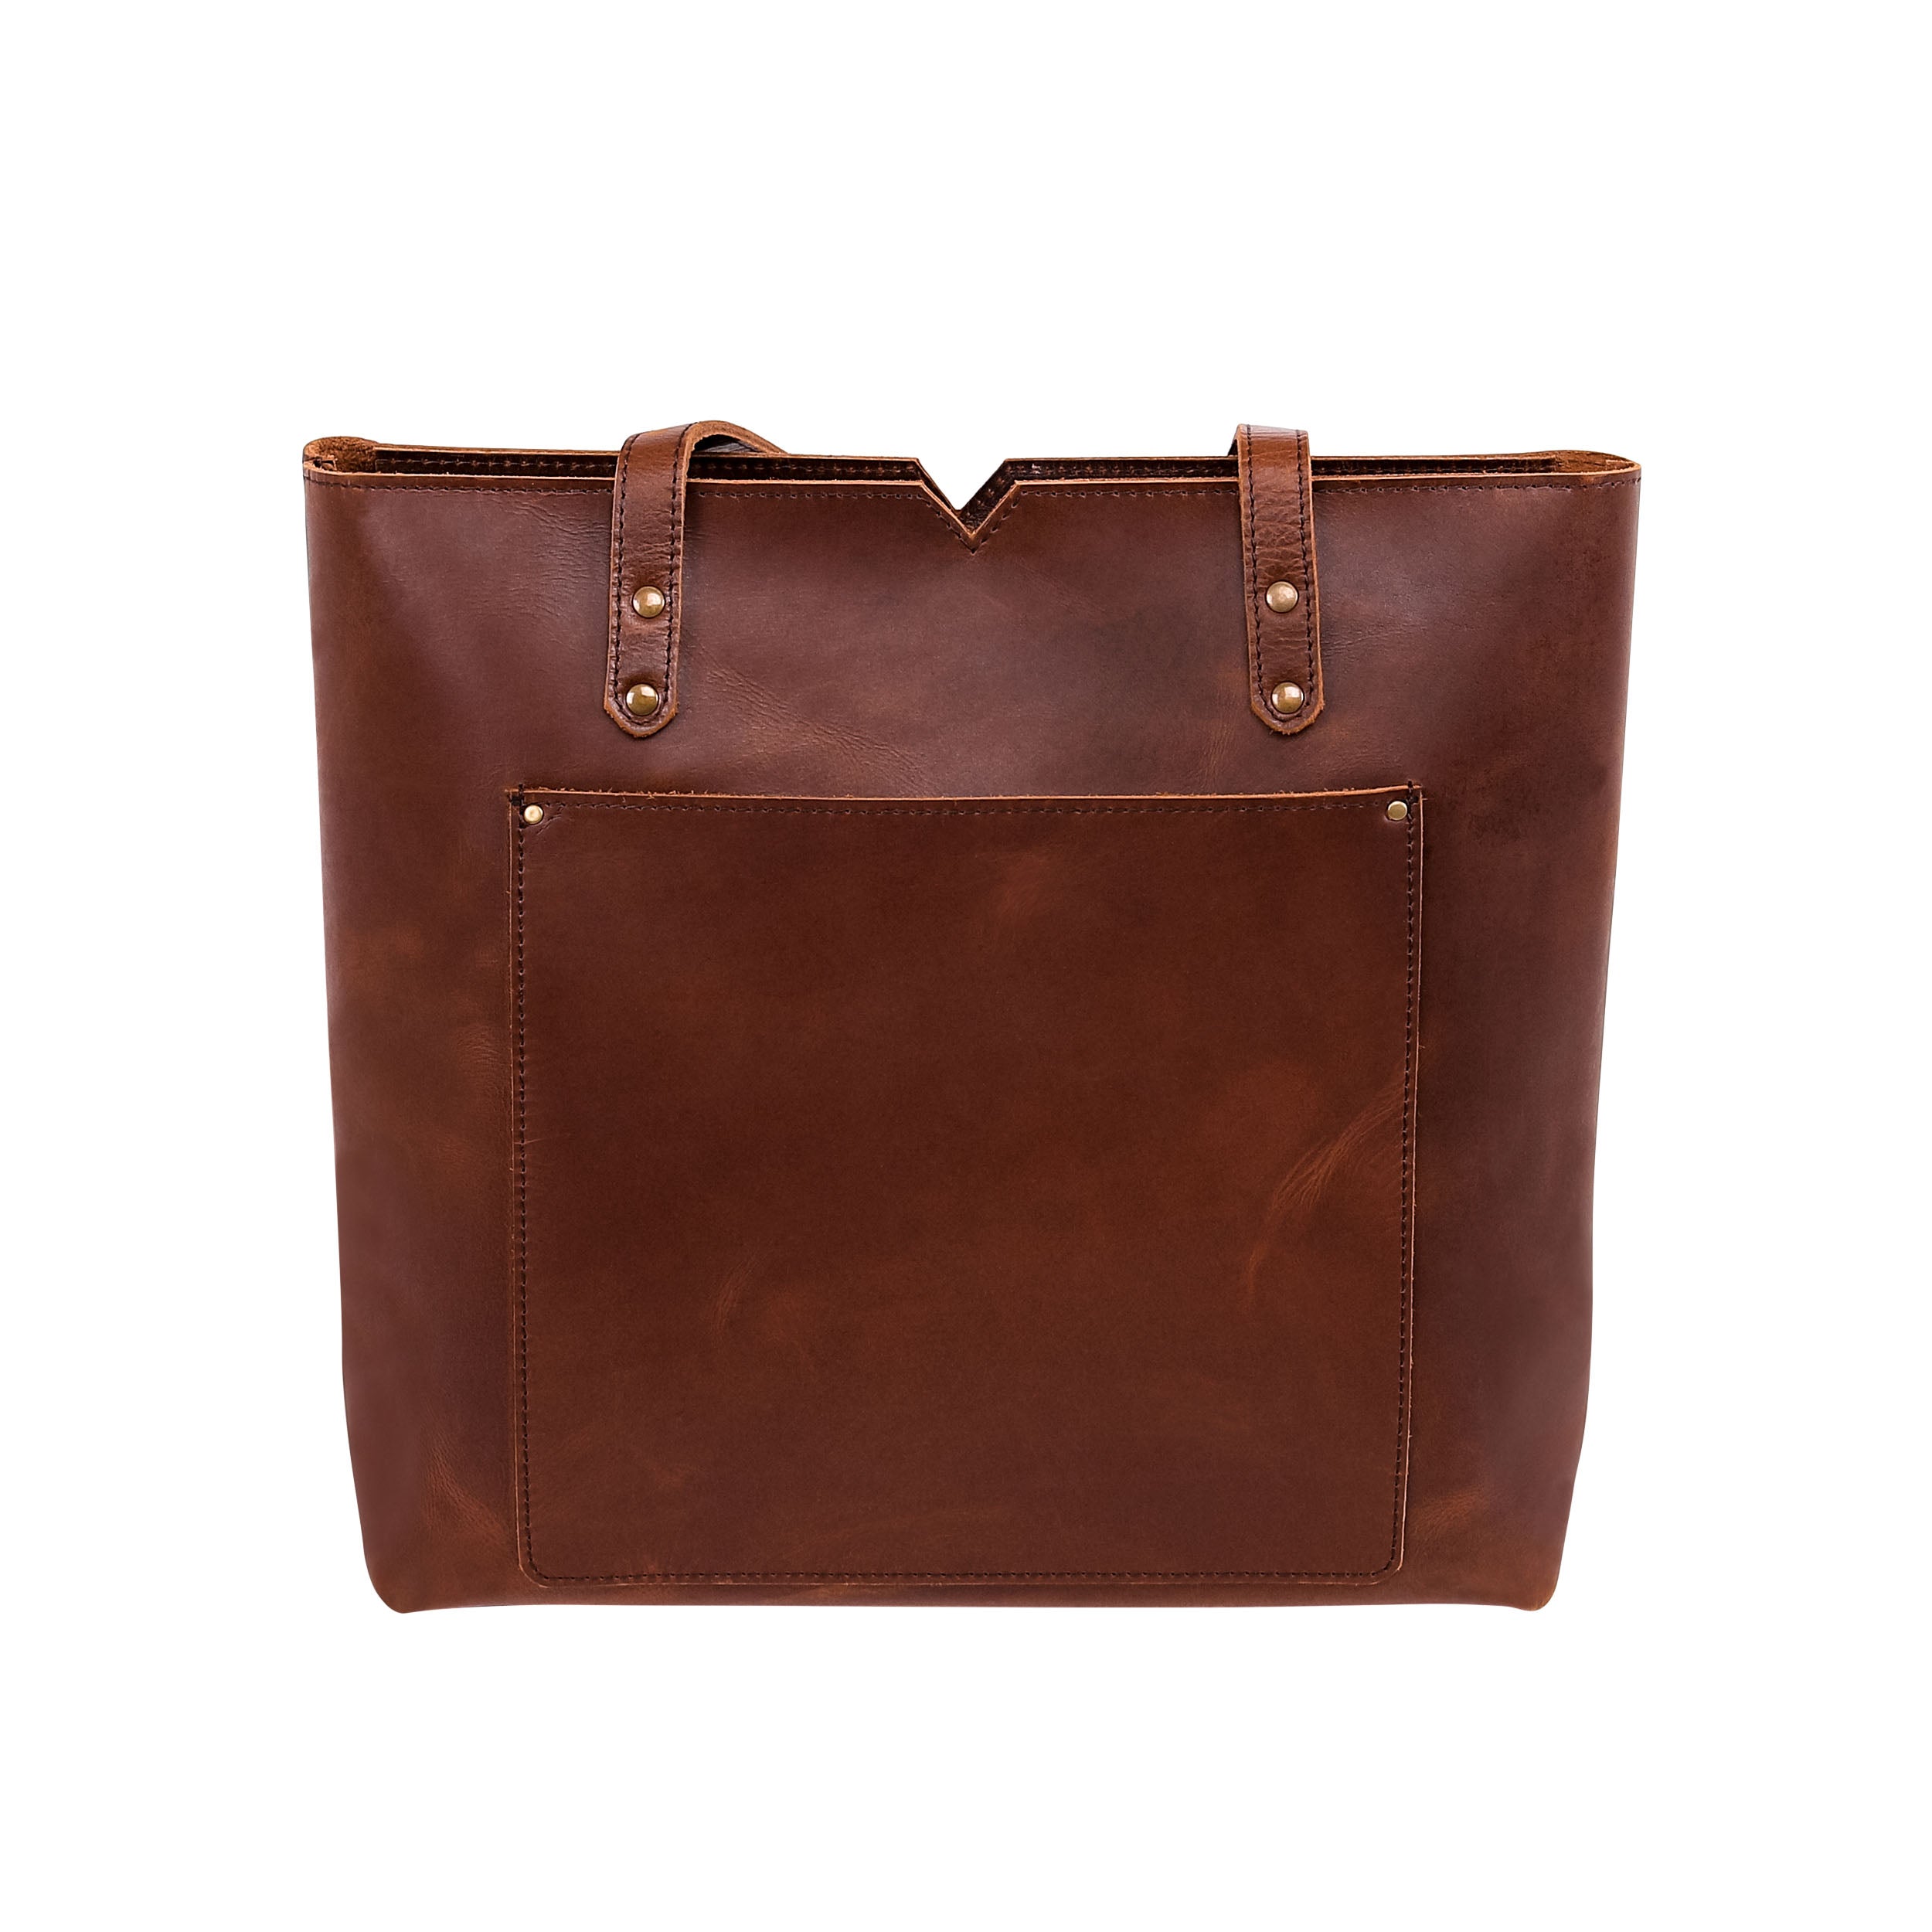 Leather Tote Bag 9918 - Medium Brown